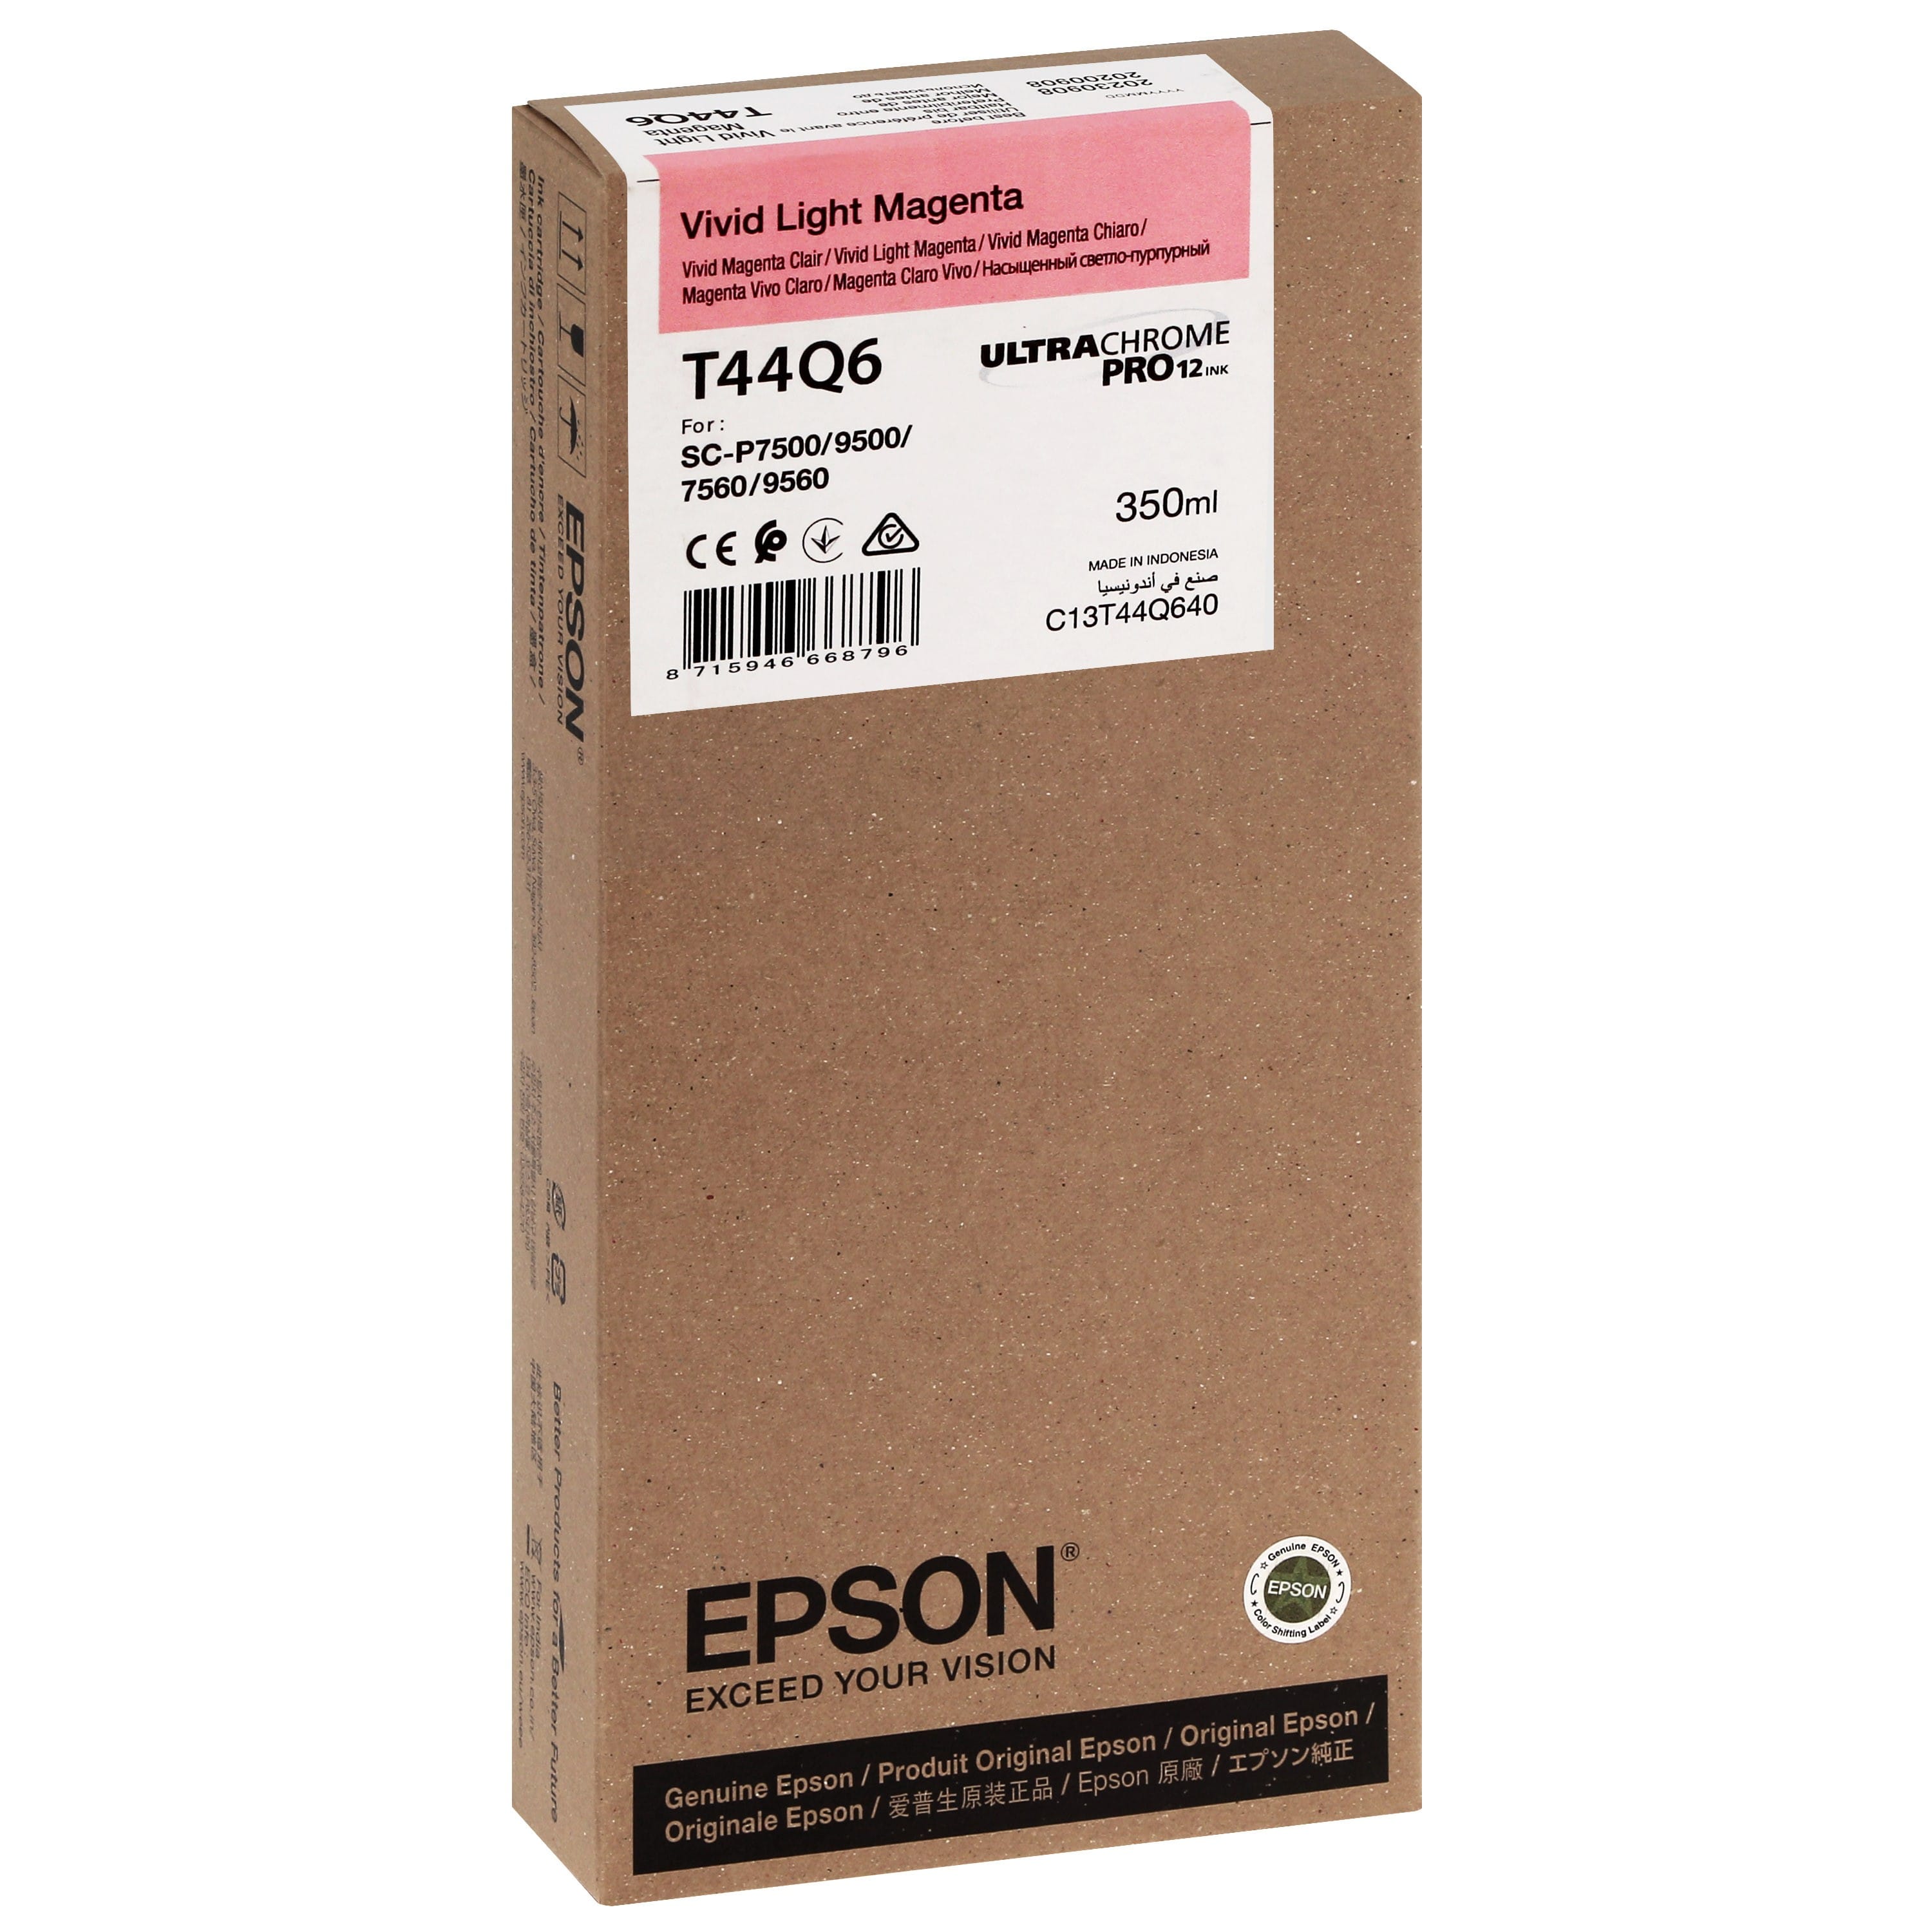 EPSON - Cartouche d'encre traceur T44Q6 Pour imprimante SC-P7500/9500 UltraChrome PRO Vivid Light Magenta - 350ml